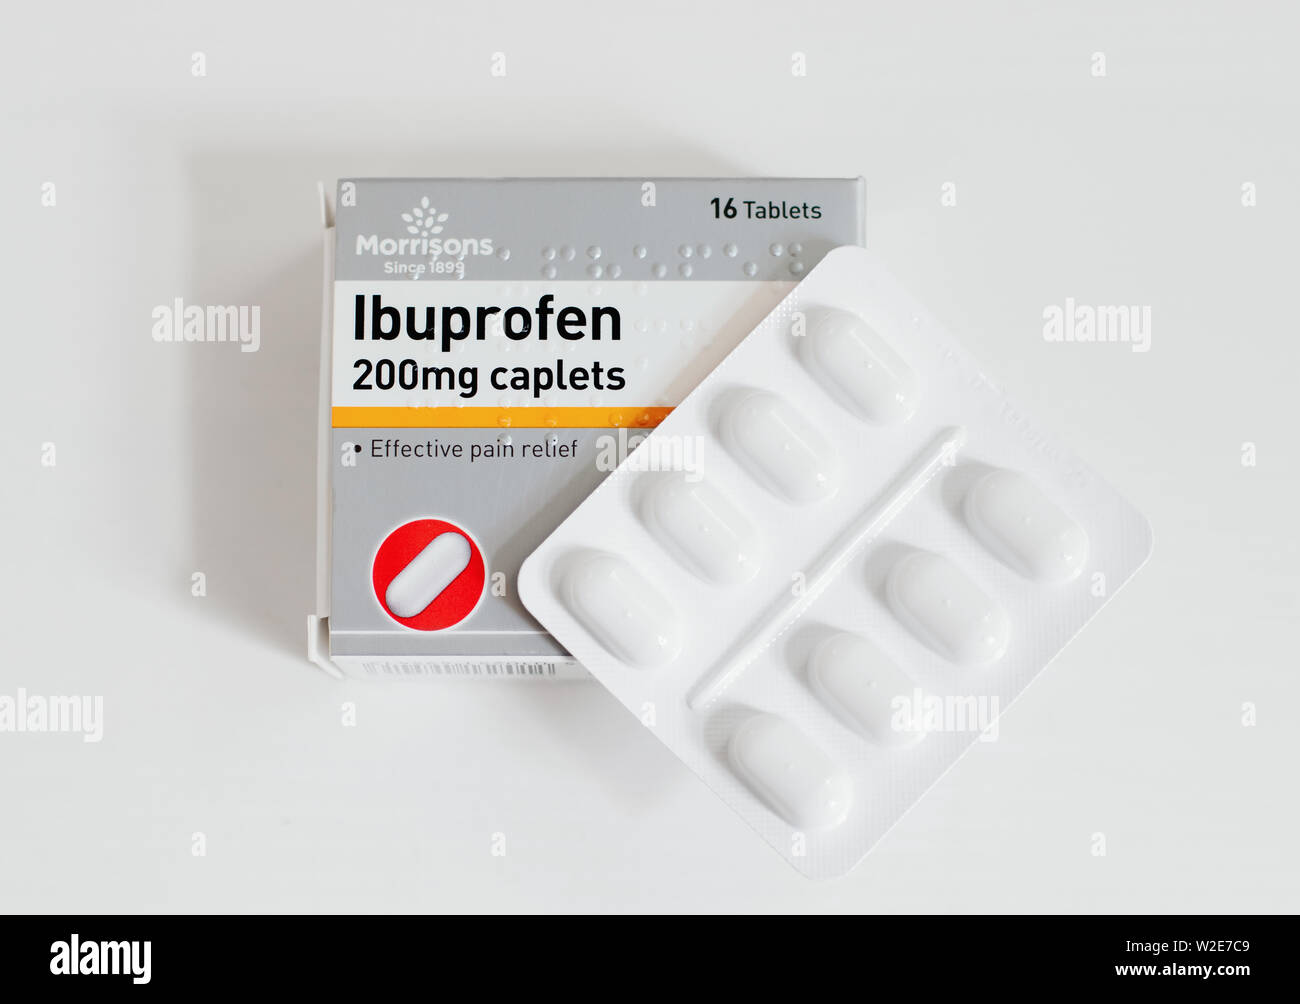 Ibuprofen immagini e fotografie stock ad alta risoluzione - Pagina 3 - Alamy